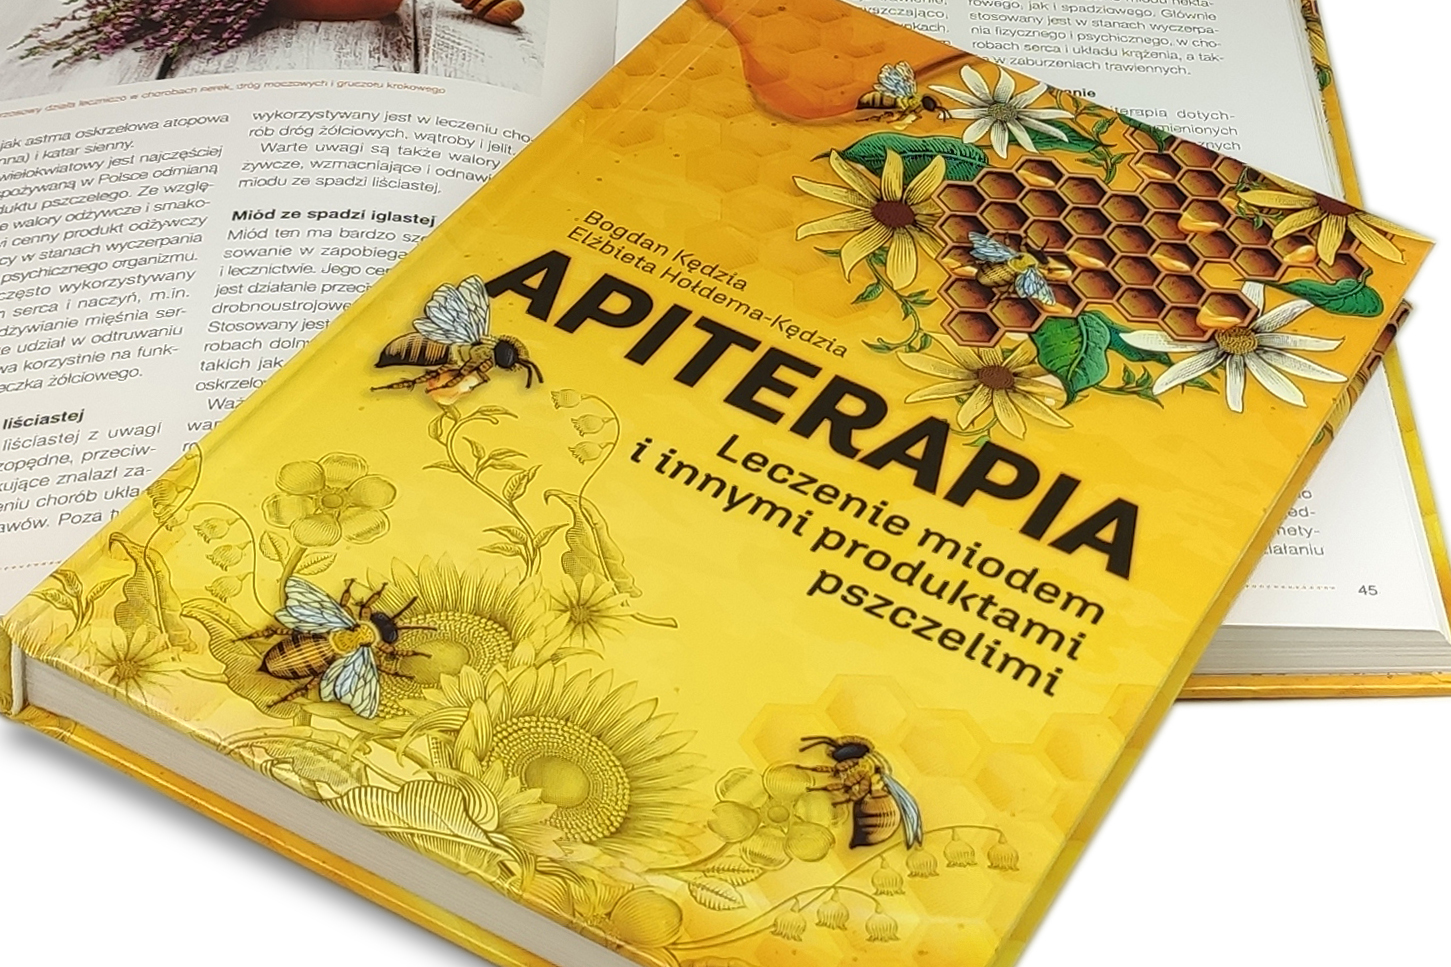 Apiterapia. Leczenie miodem i innymi produktami pszczelimi